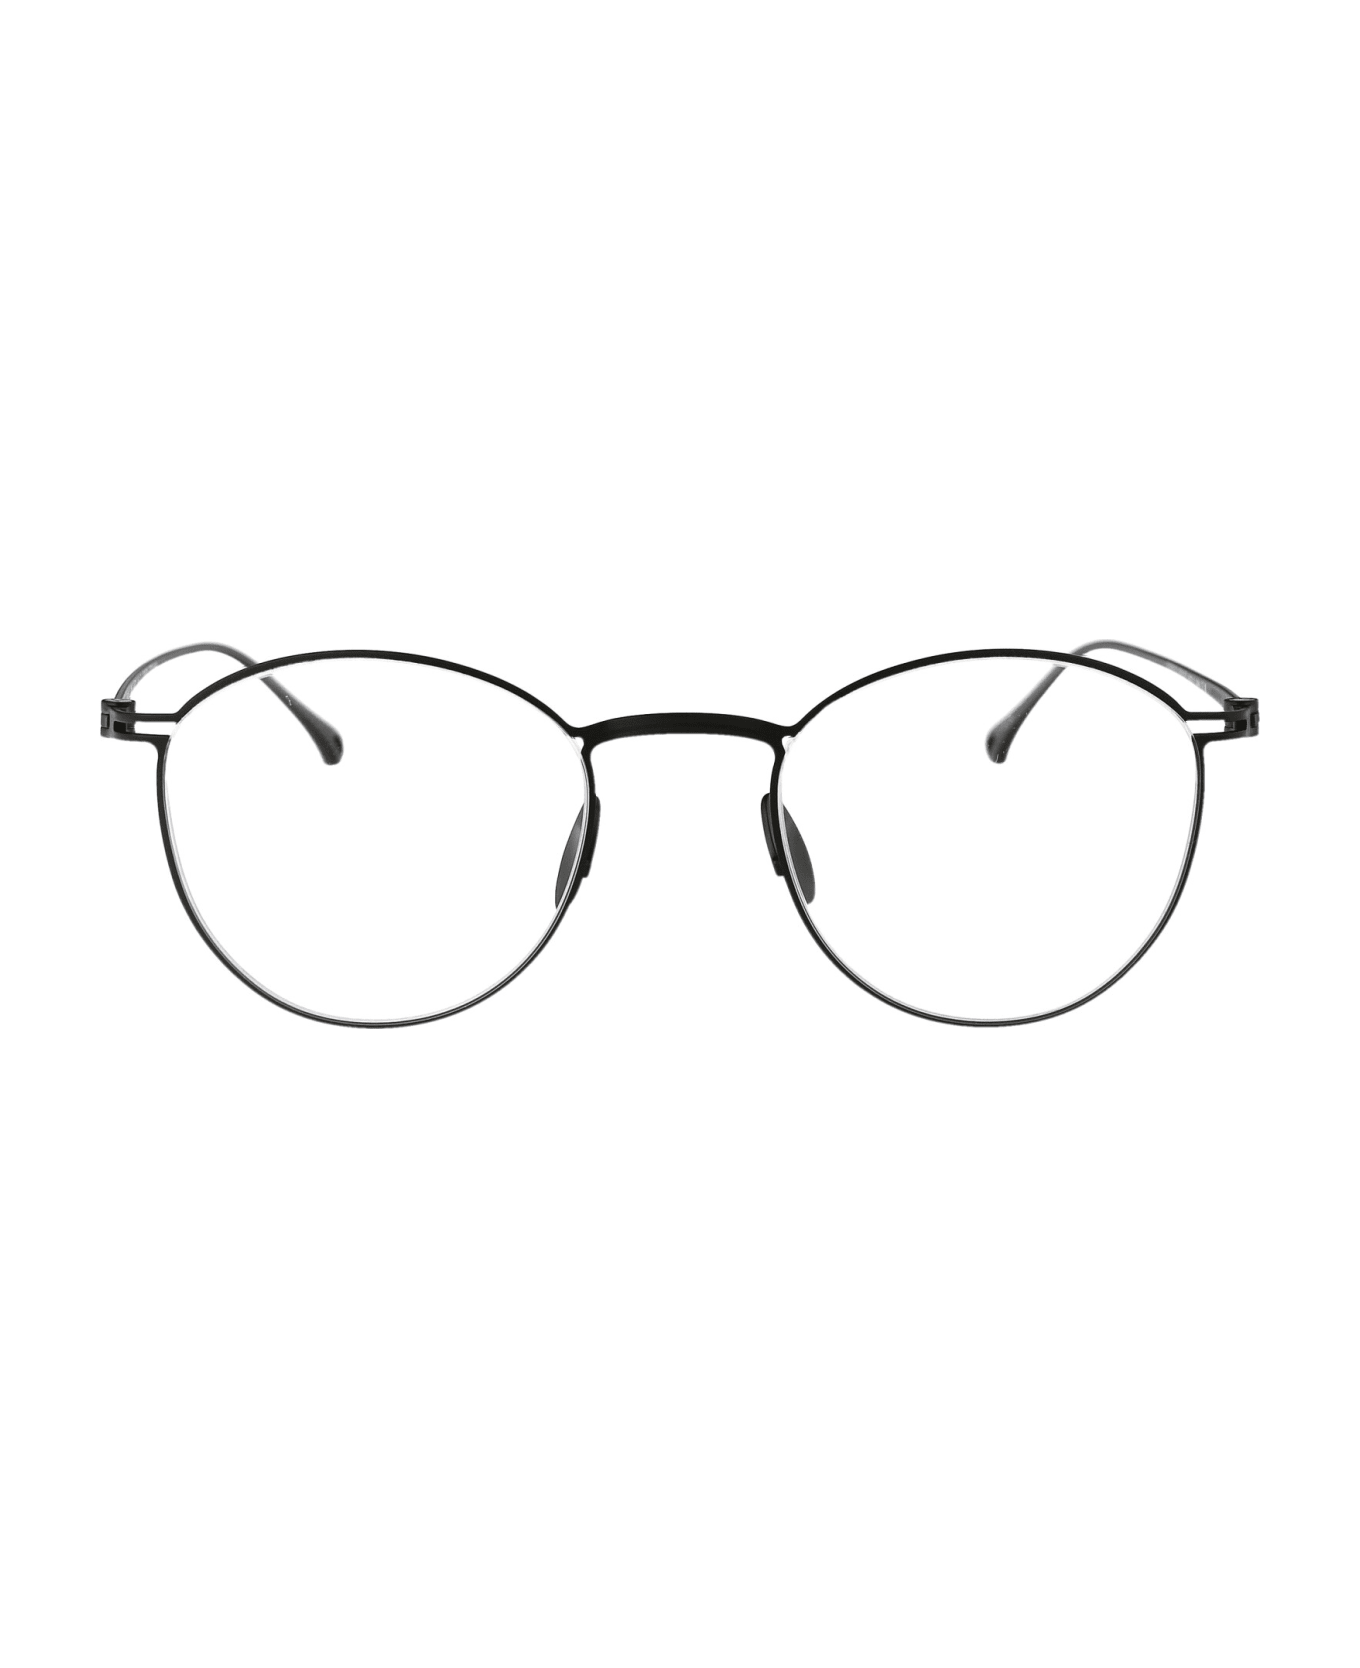 Giorgio Armani 0ar5136t Glasses - 3356 Matte Gunmetal